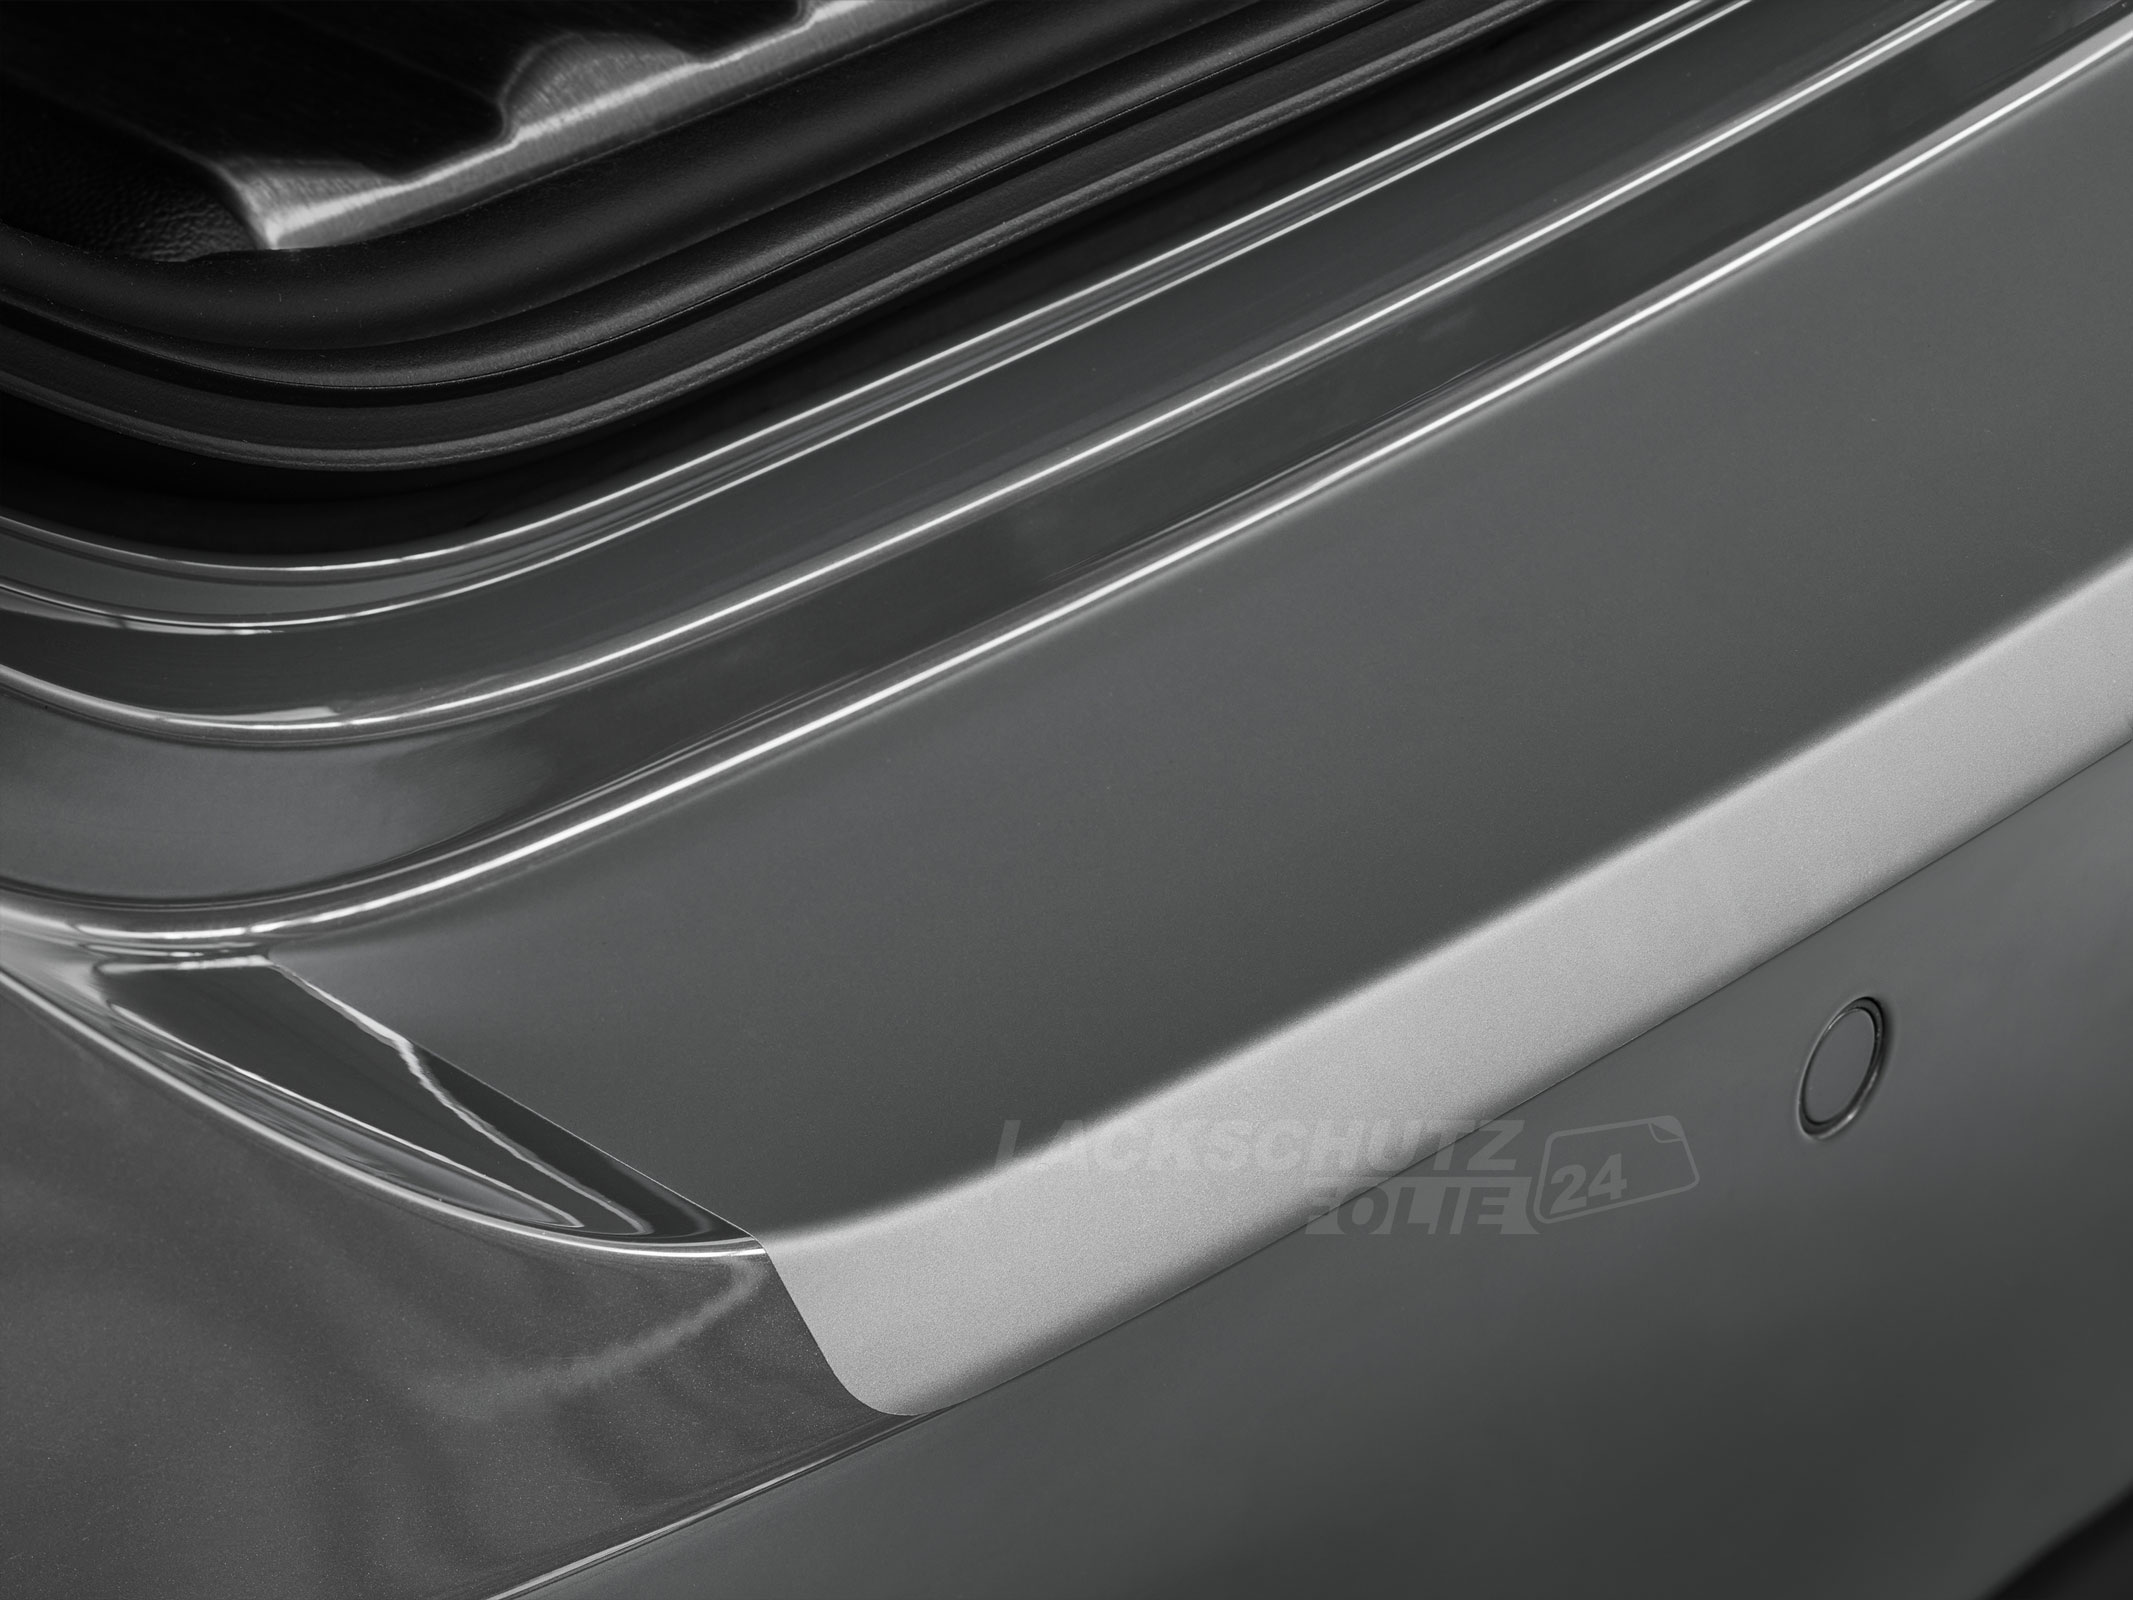 Ladekantenschutzfolie - Transparent Glatt MATT 110 µm stark  für Audi A4 Limousine B9, Typ 8W, S-LINE, ab BJ 11/2015 + Facelift